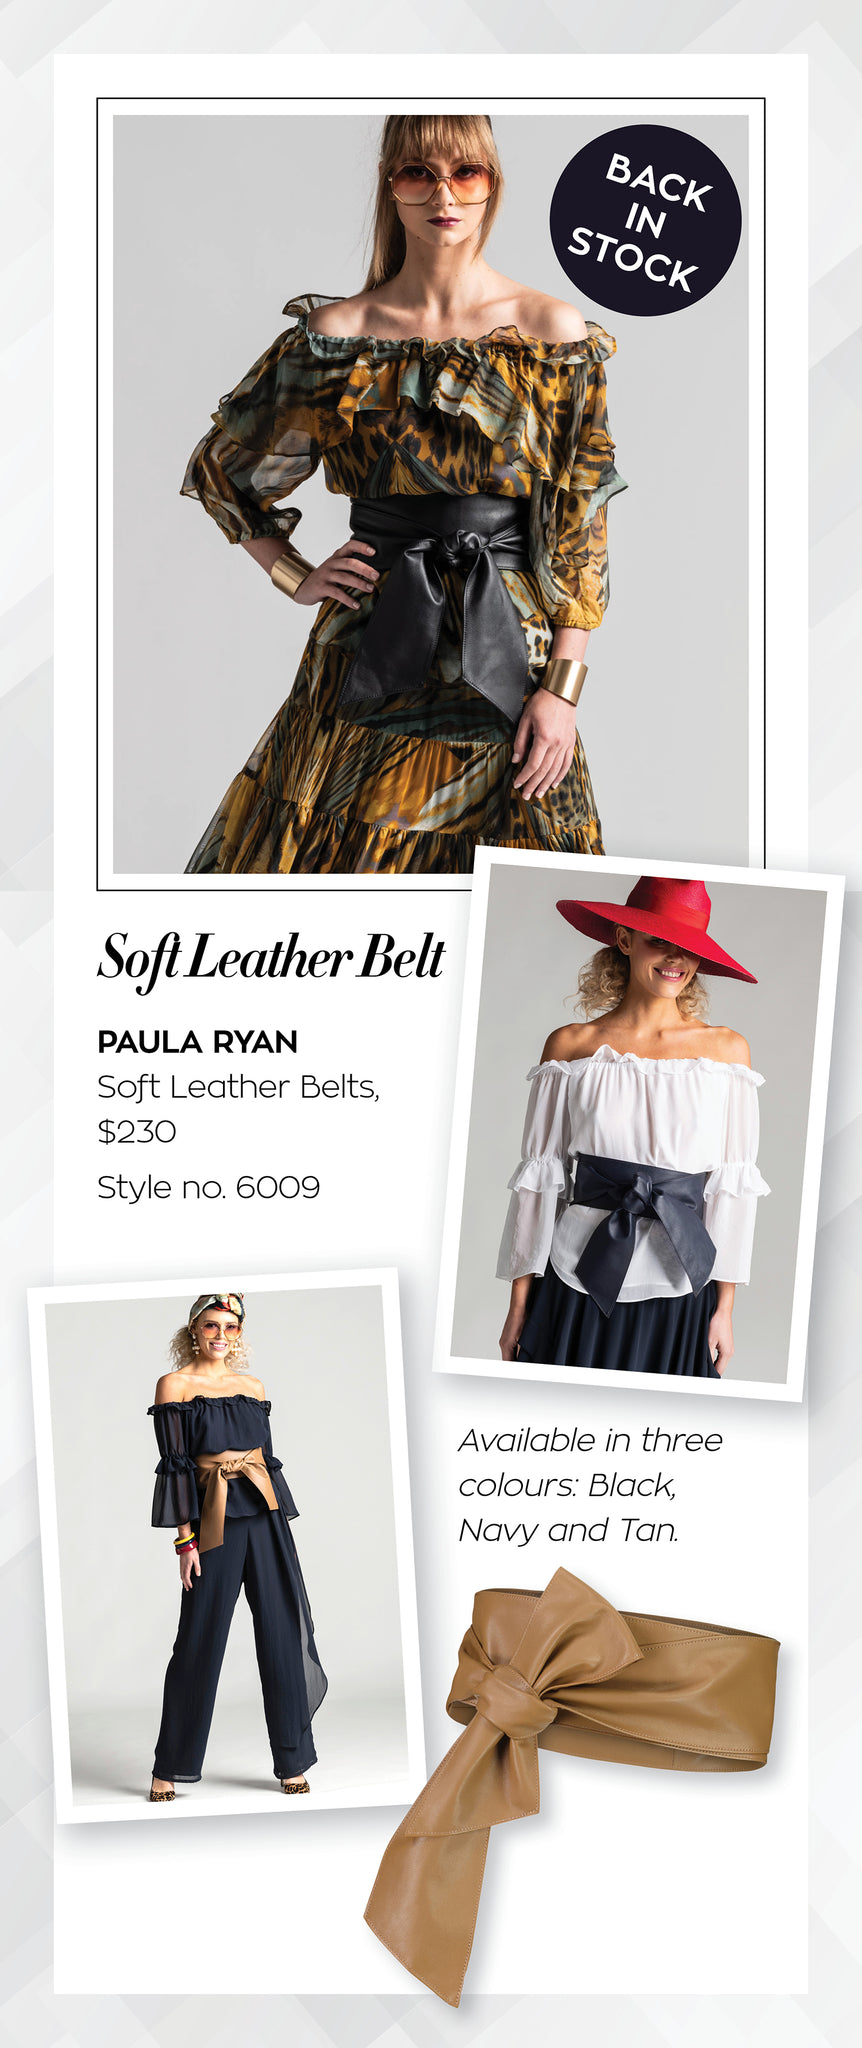 Paula Ryan Soft Leather Belts